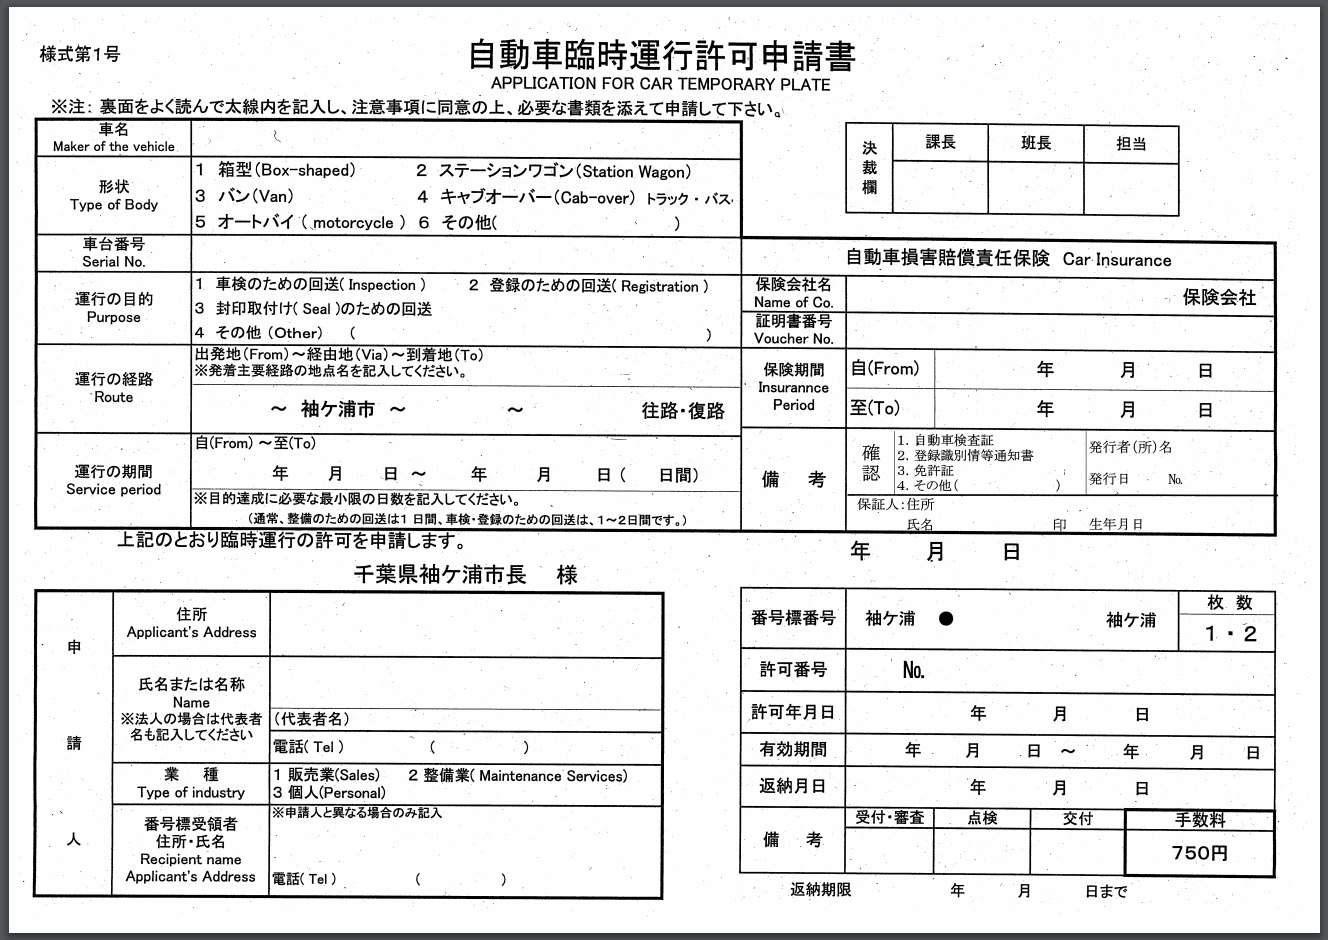 仮ナンバーの取得方法 千葉県 車庫証明申請代行